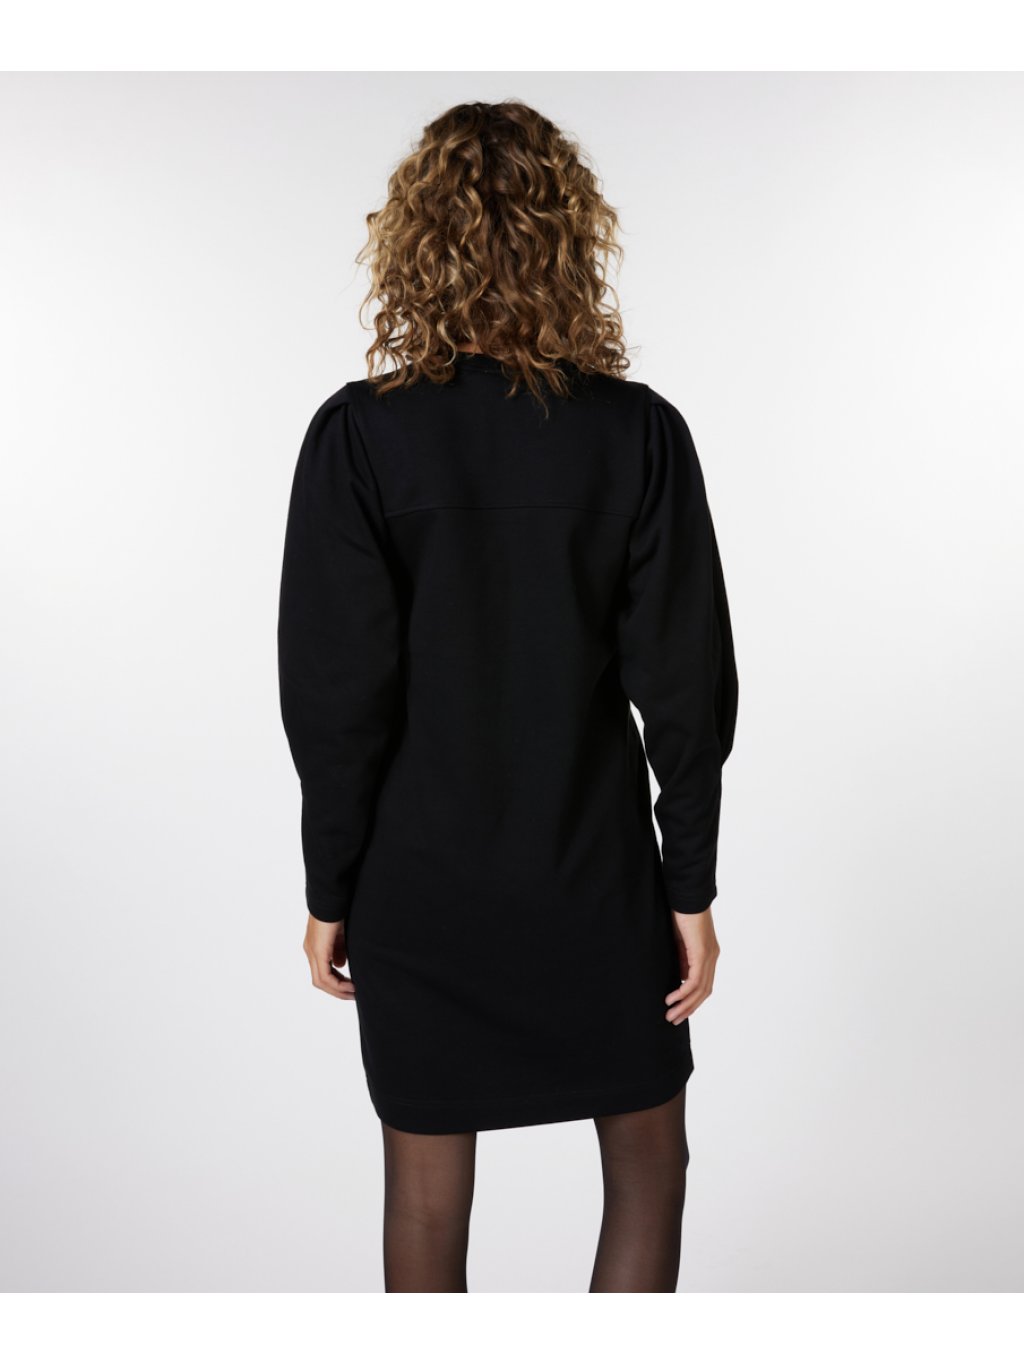 Šaty Esqualo 5713 černé s nápisem a zajímavým rukávem